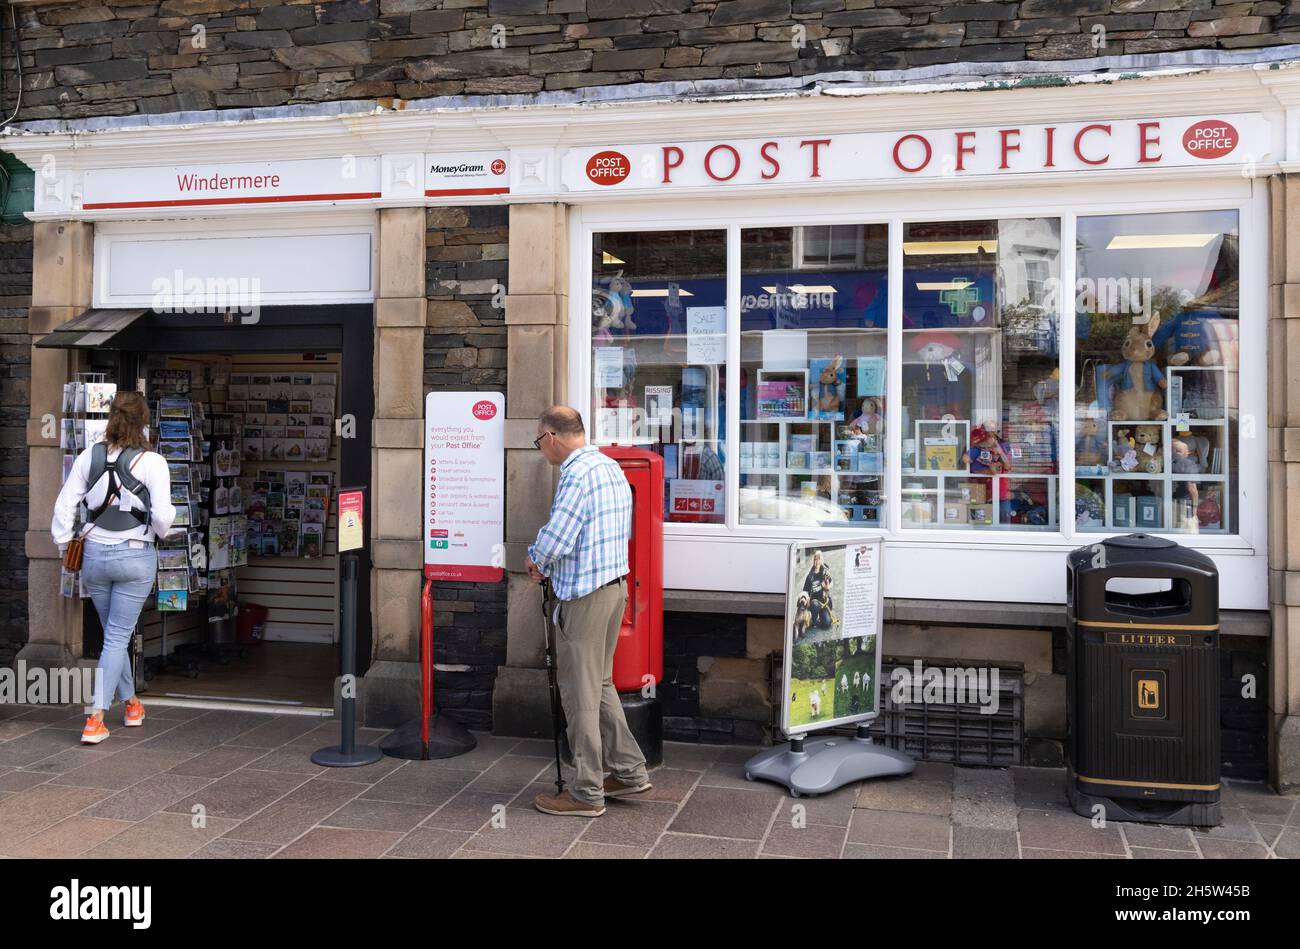 Lake District Post Office Inghilterra - persone fuori Windermere Post Office, Windermere città, il Lake District, Cumbria Regno Unito Foto Stock